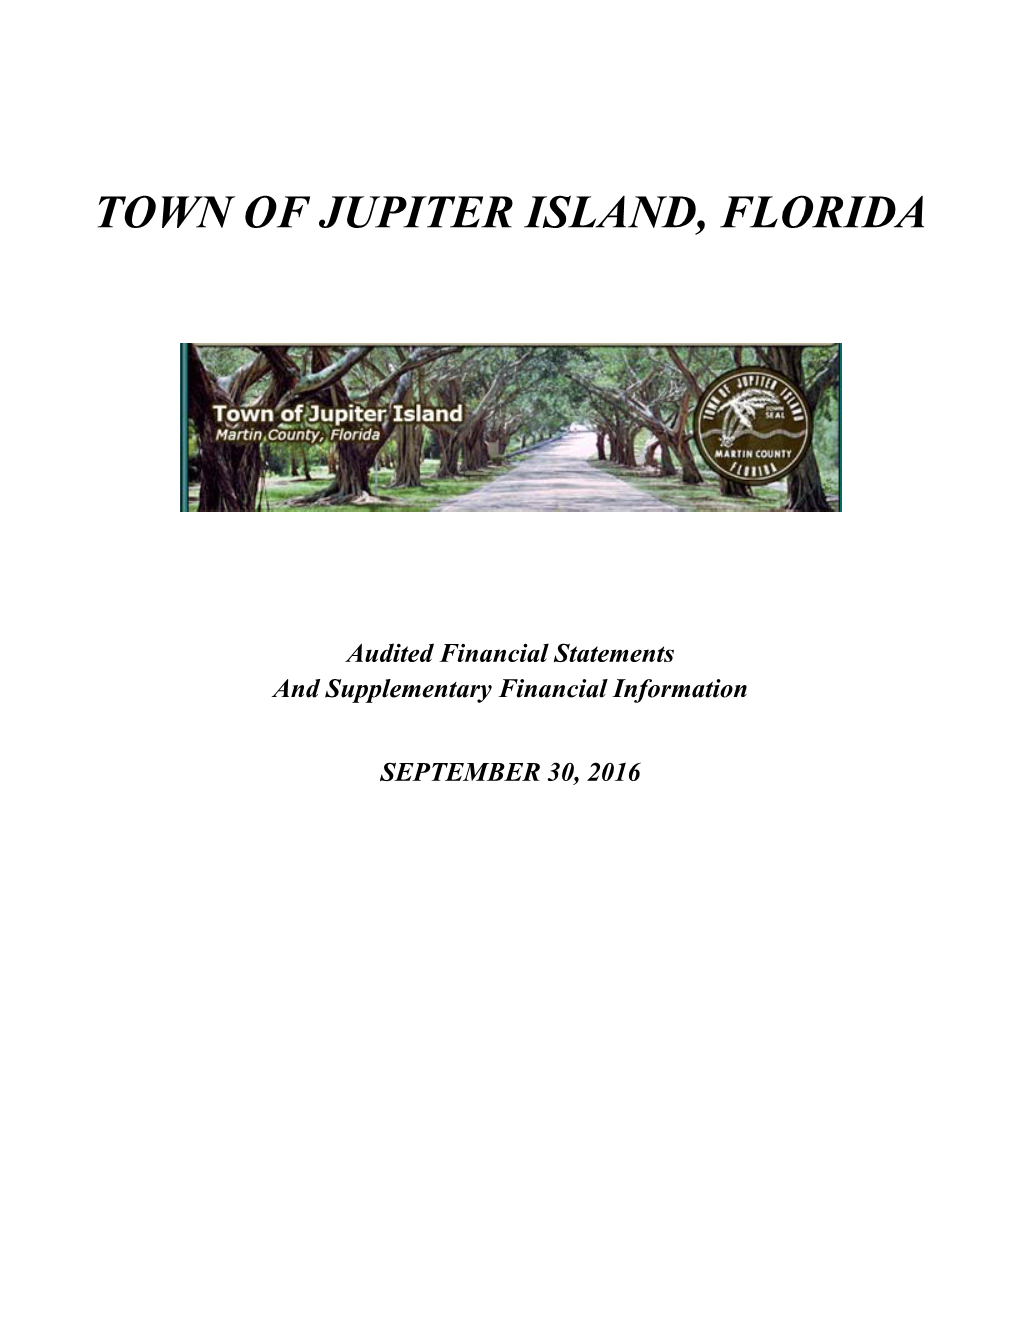 Town of Jupiter Island, Florida